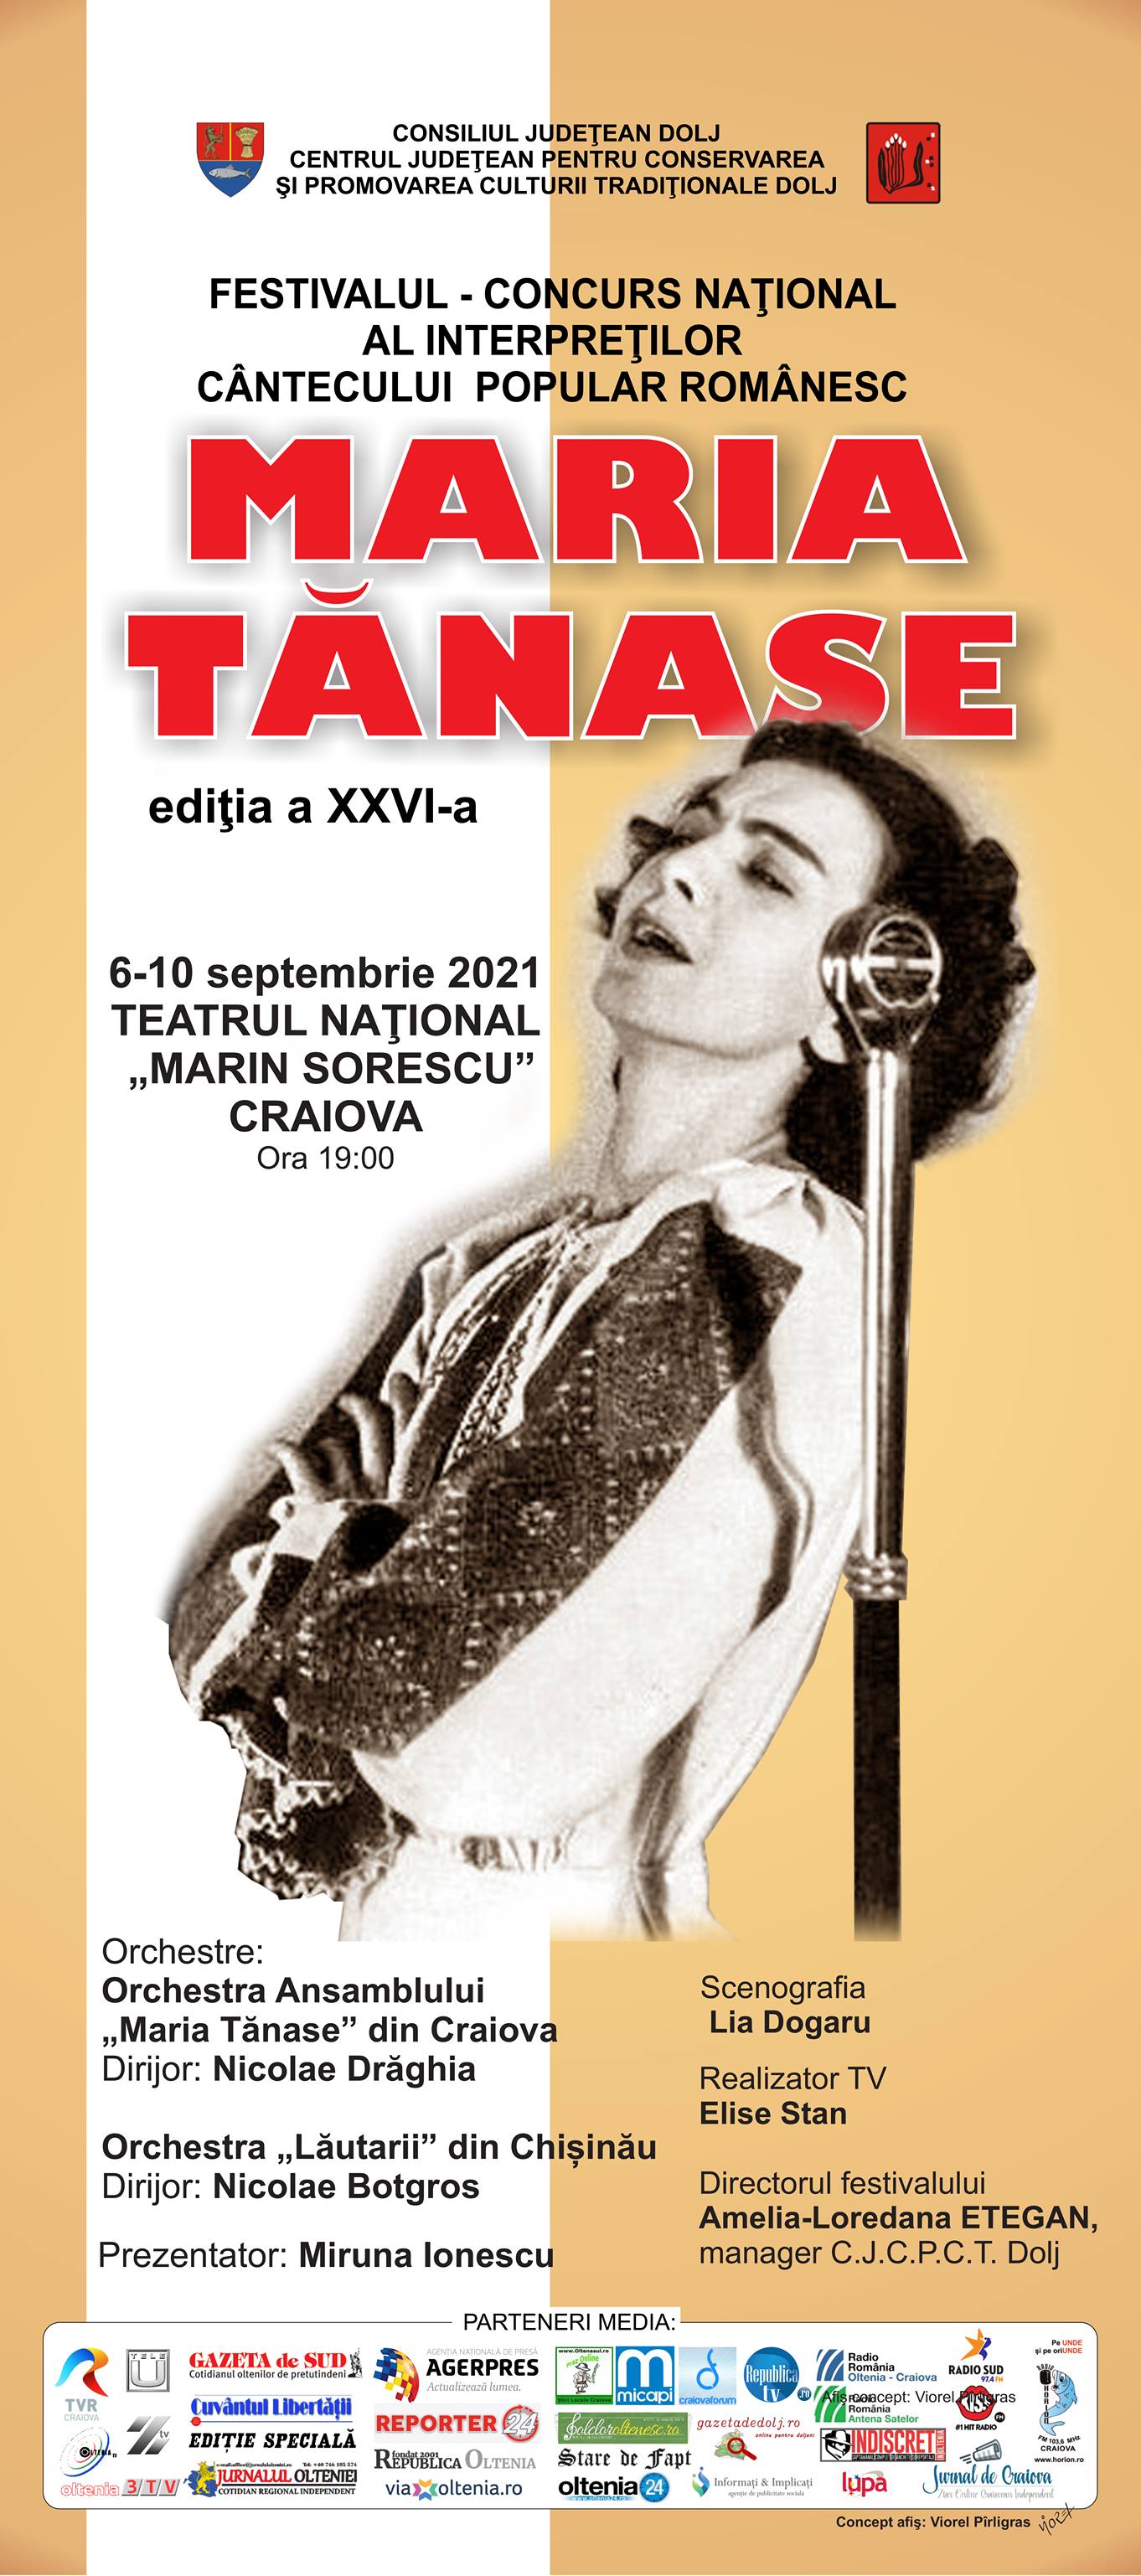 #TopOfTheFolklore. The "Maria Tănase" festival starts on September 6 in Craiova